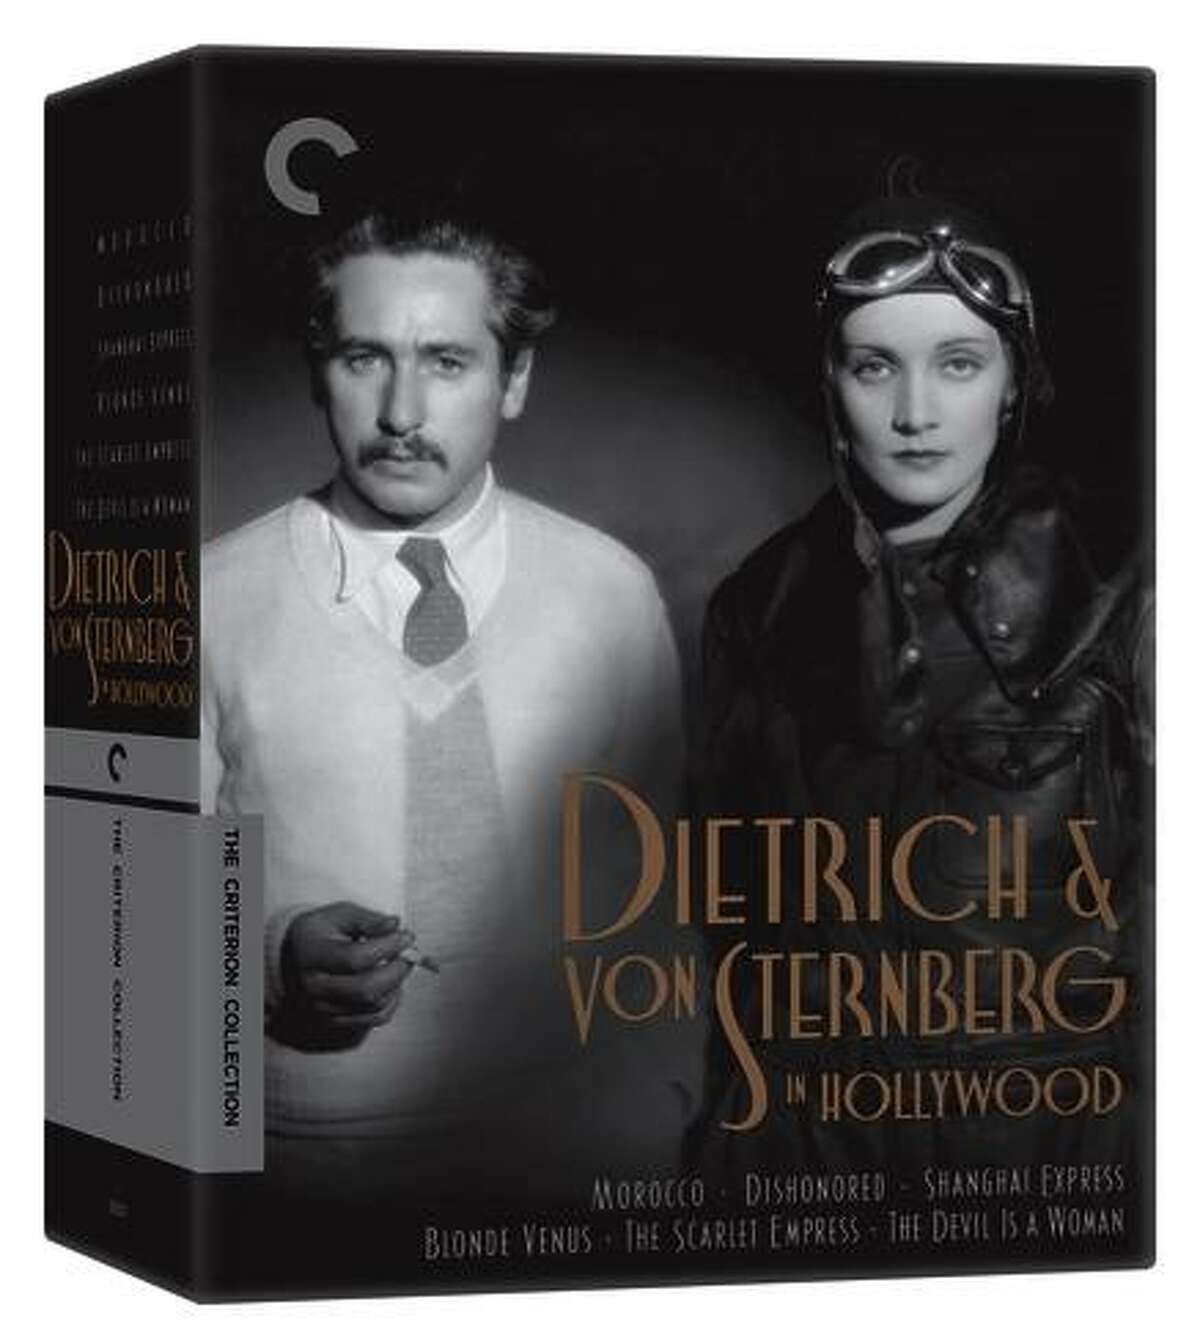 Director Josef Von Sternberg and Marlene Dietrich.